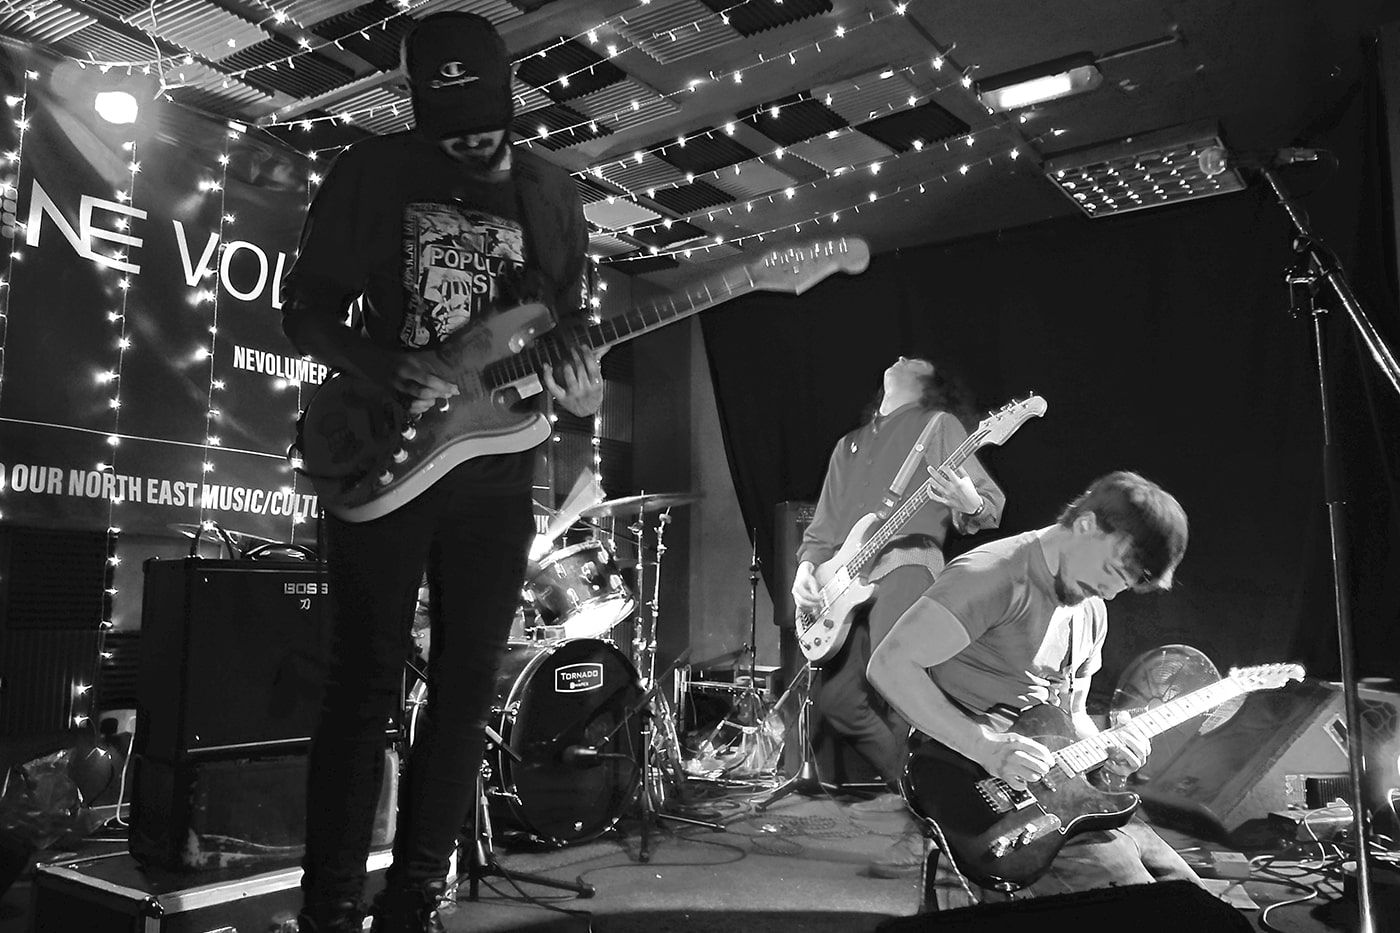 ‘Bedsit’ performing at NE Volume Music Bar, Stockton.